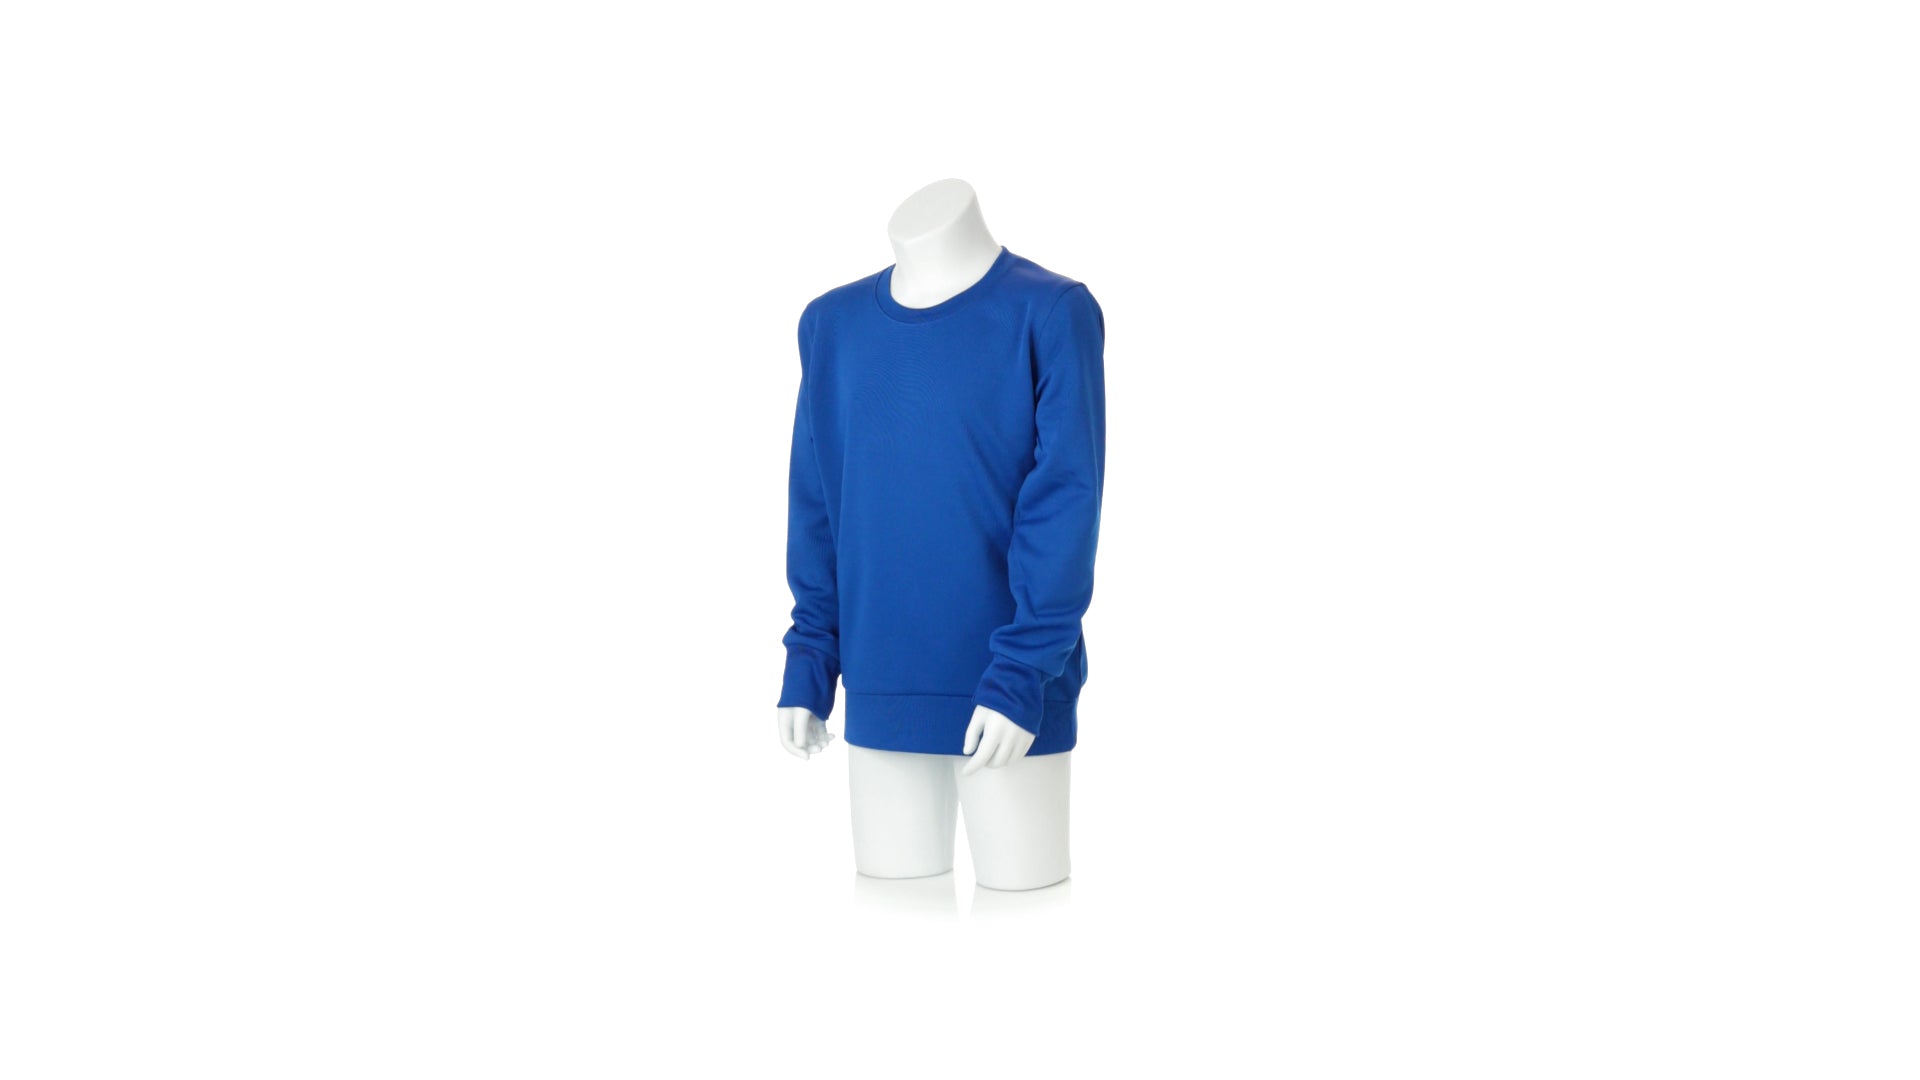 Sweat-Shirt manches longues bleu sur un mannequin 